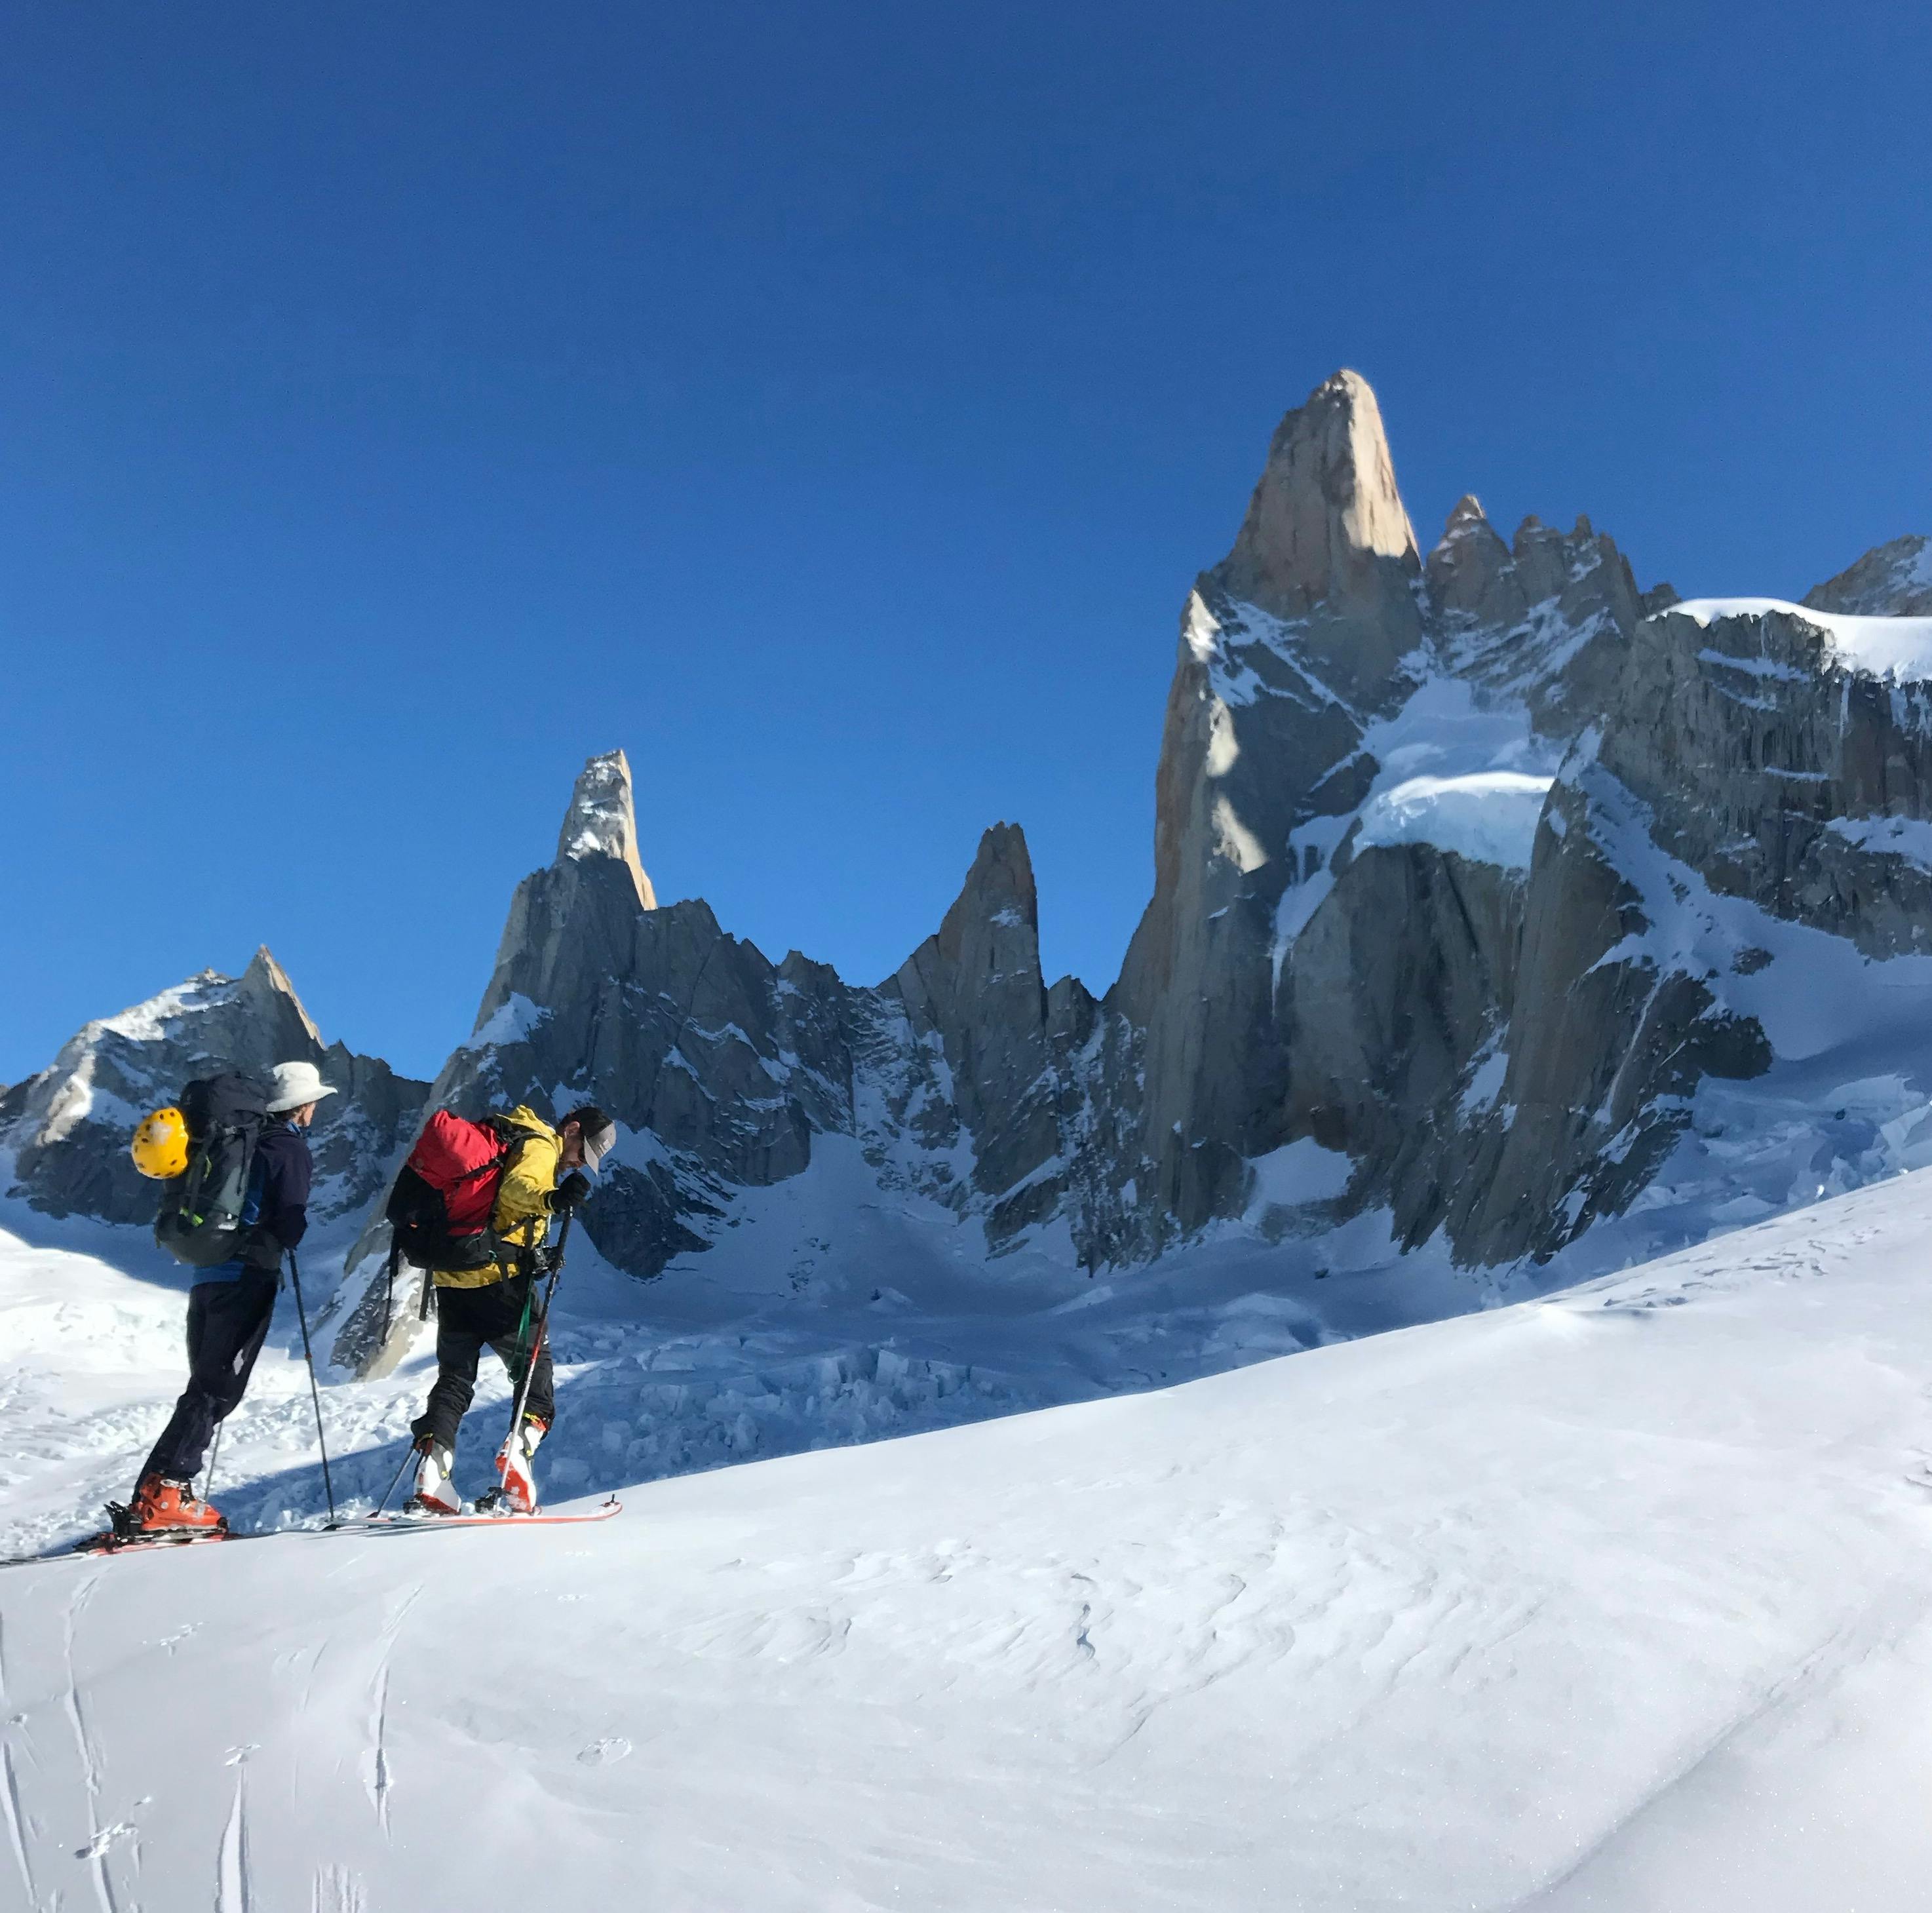 Two people ski below jagged peaks.